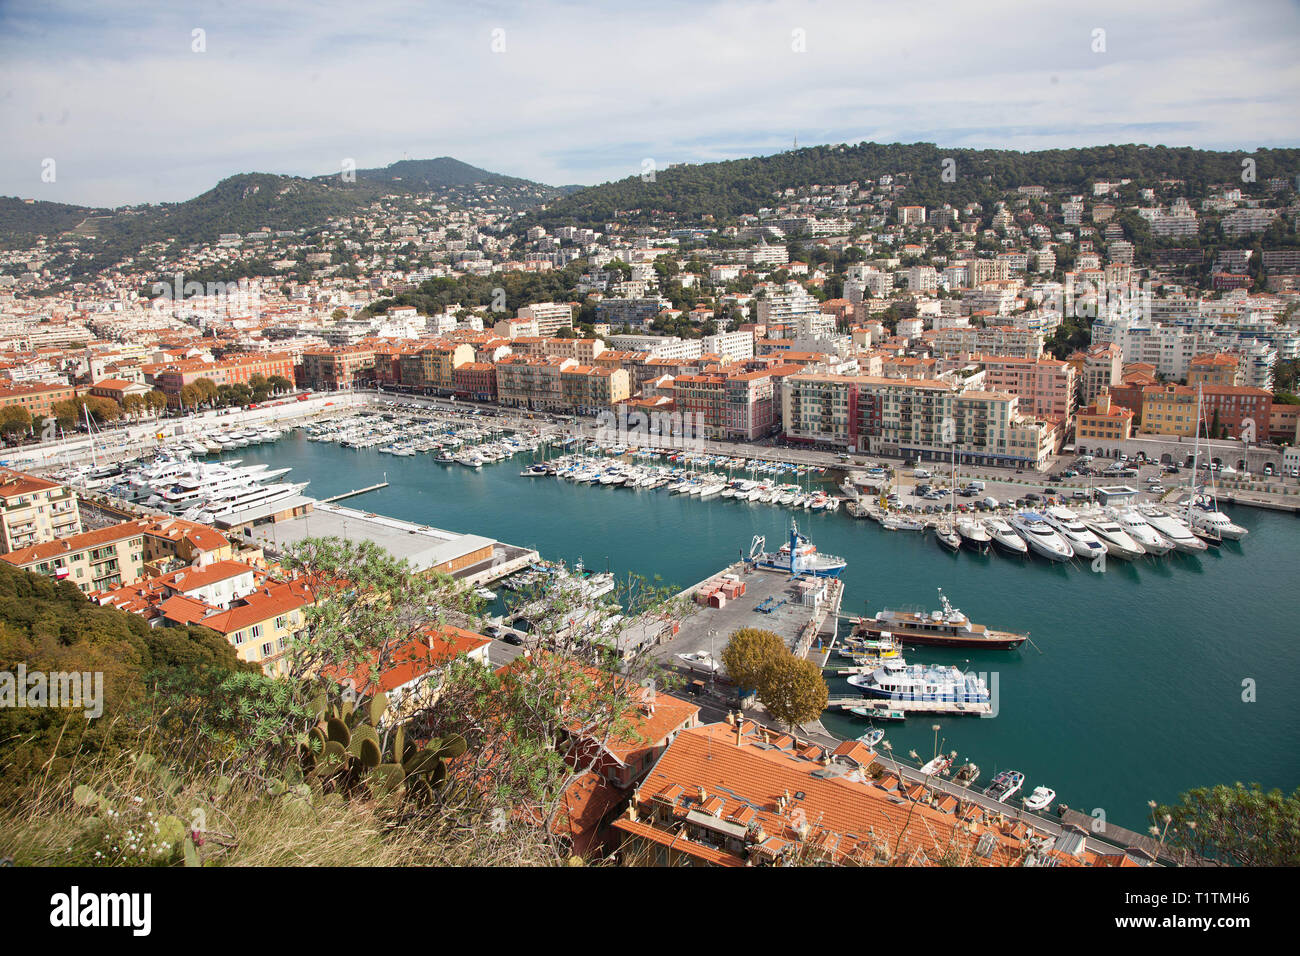 Nice est une ville située dans le sud-est de la France, dans la région Provence-Alpes-Côte d'Azur sur la côte méditerranéenne et la Côte d'Azur. Banque D'Images